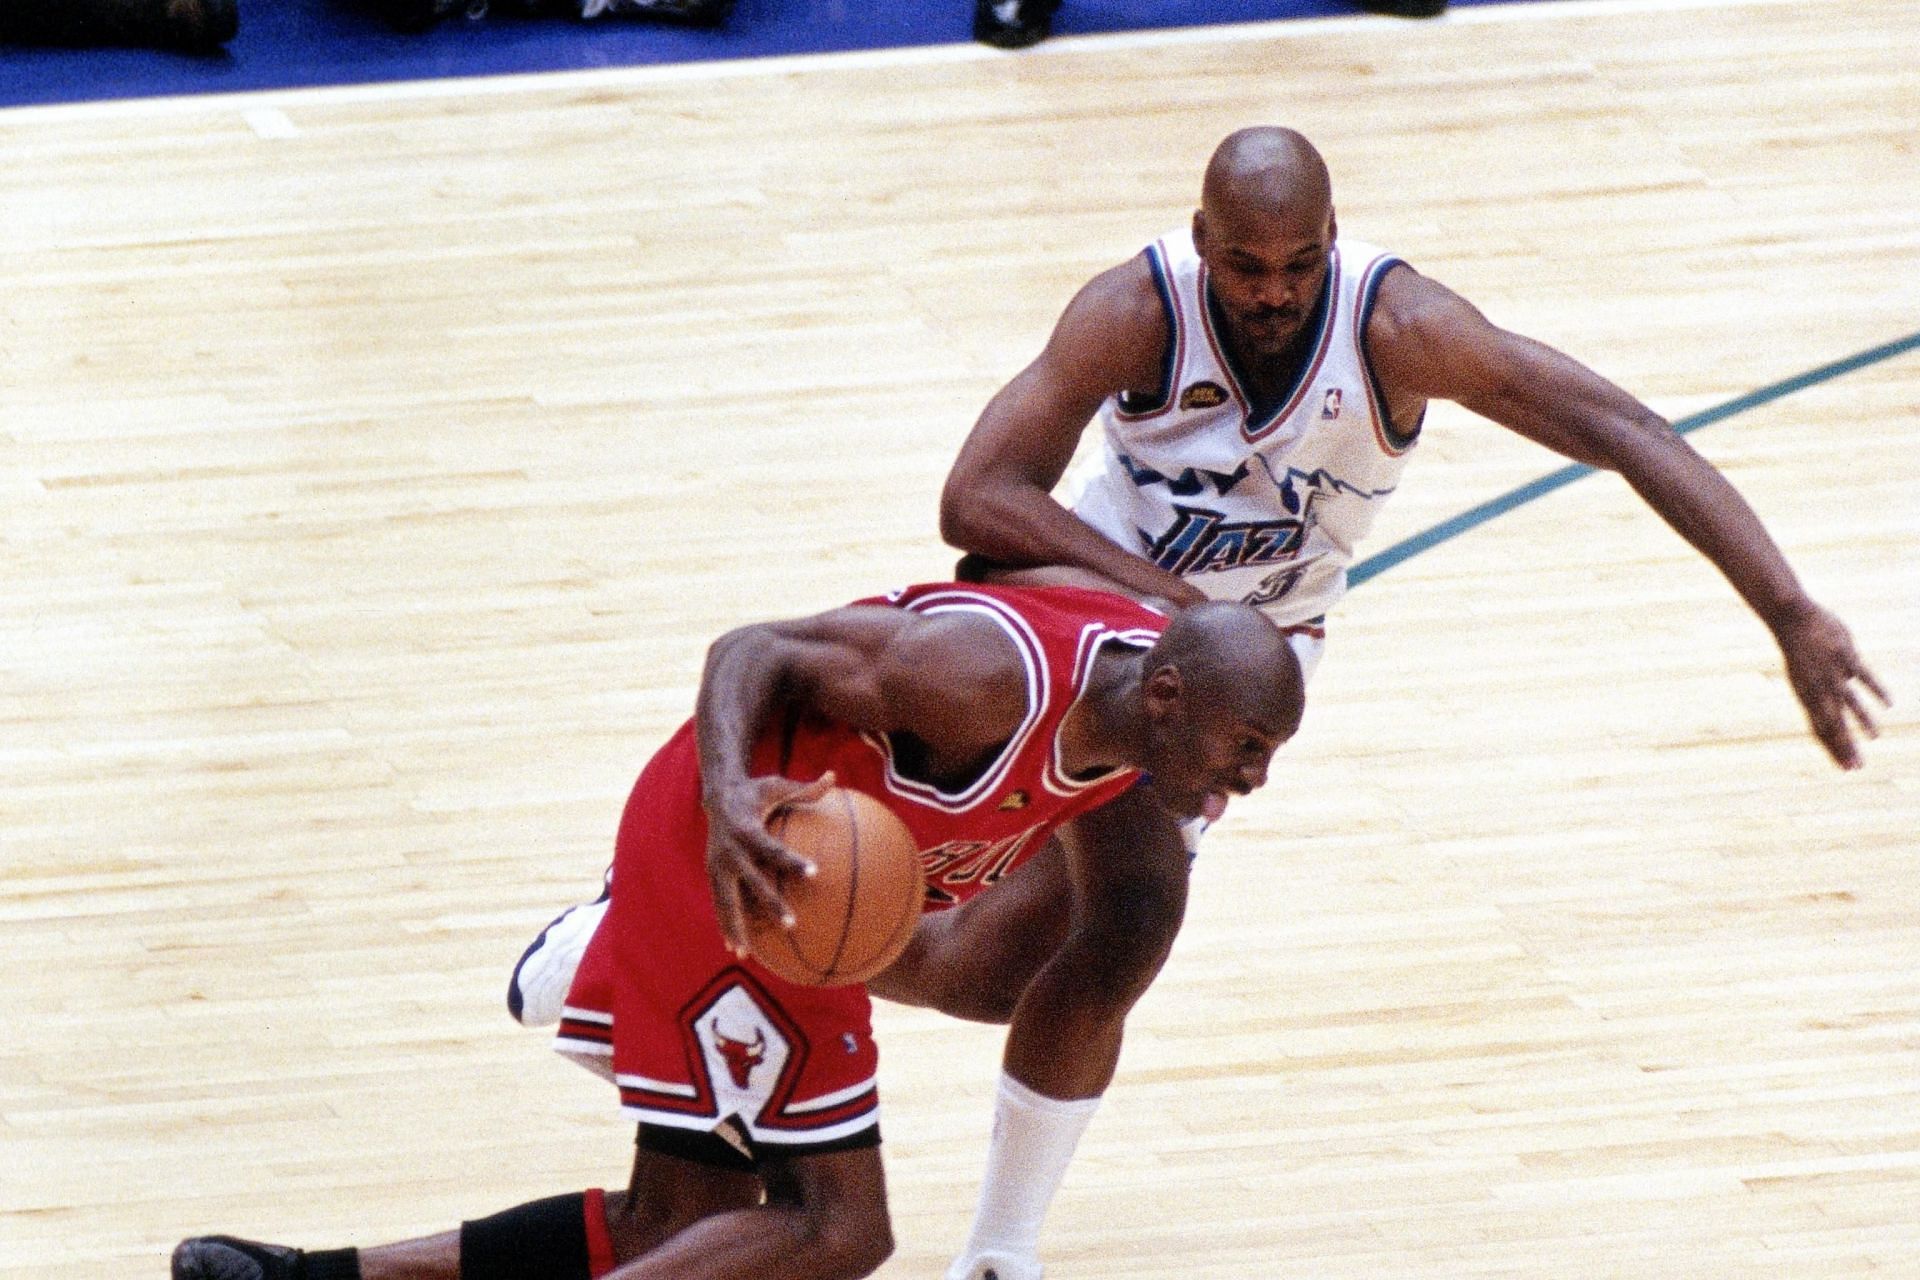 Michael Jordan and Bryon Russell. (Photo: Bleacher Report)